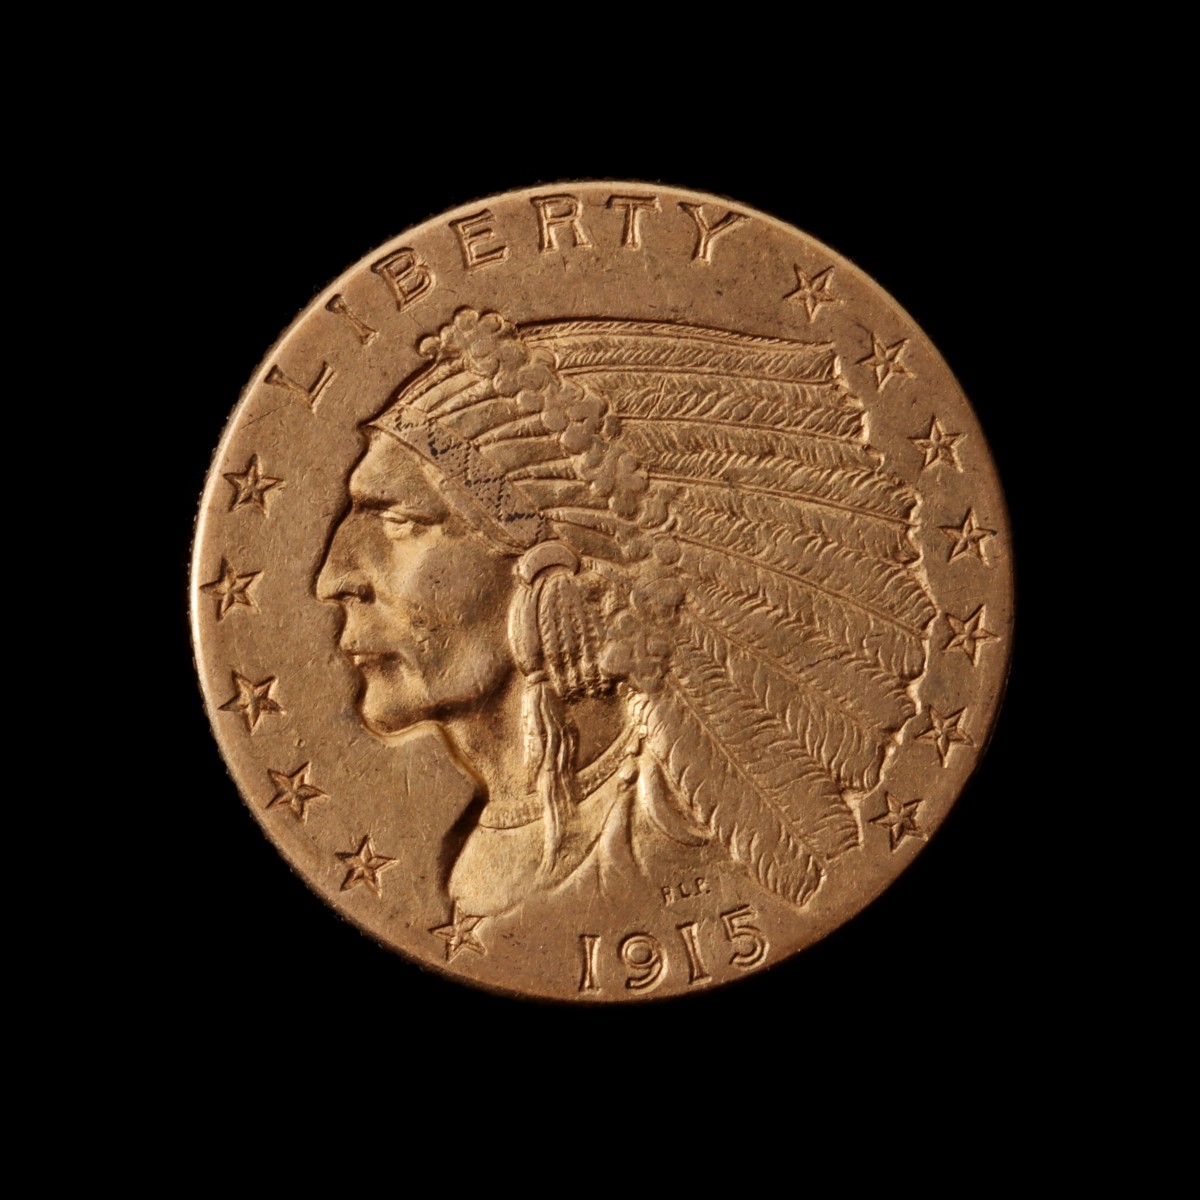 A 1915 U.S. 2-1/2 DOLLAR GOLD COIN